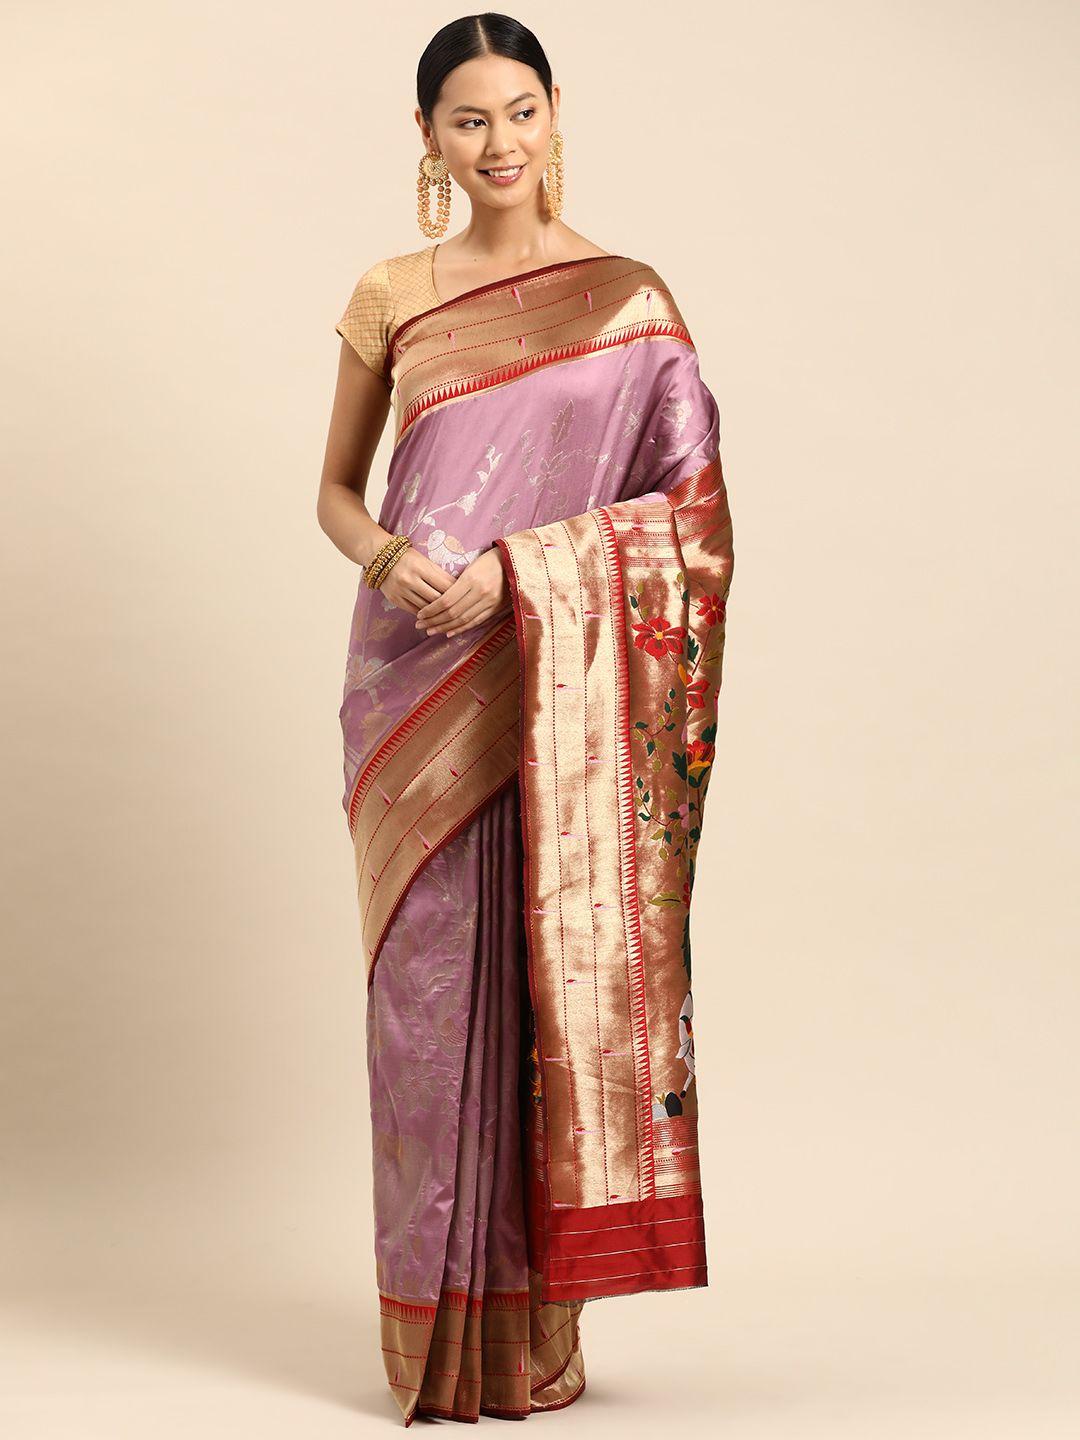 tasarika woven design ethnic motifs zari paithani saree